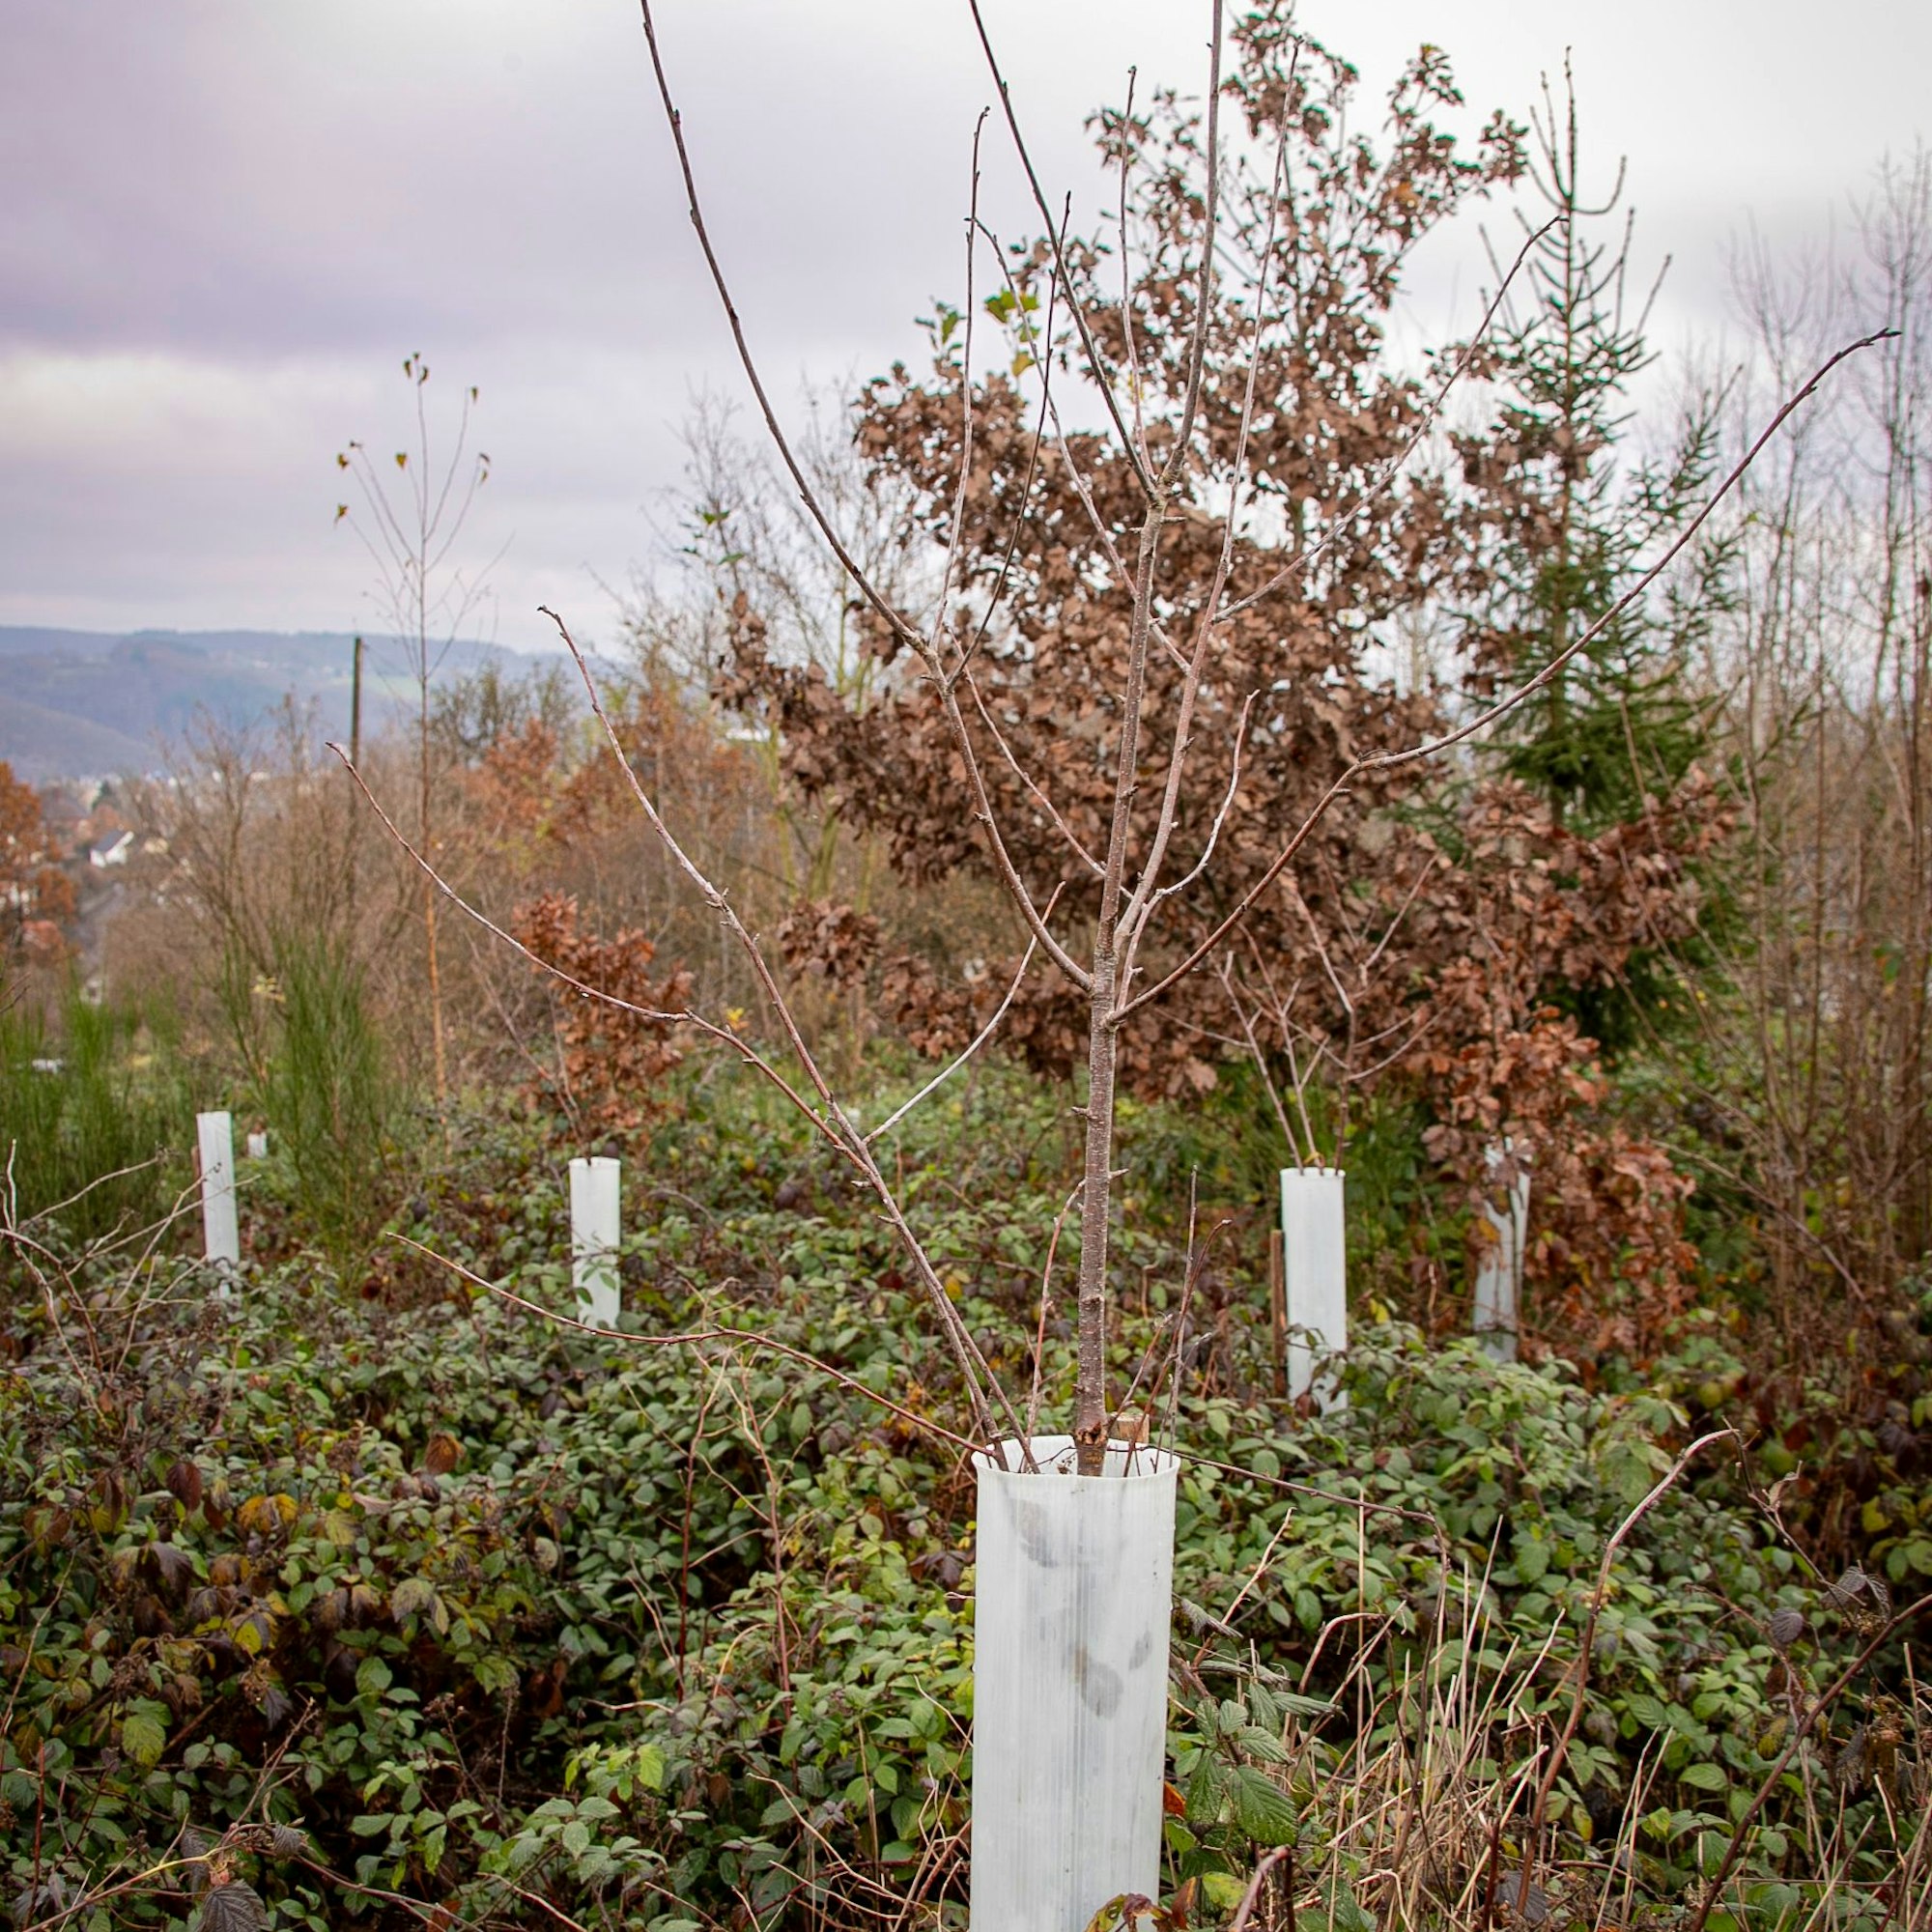 Weco will einen Wald in Eitorf mit 17.000 Bäumen pflanzen

